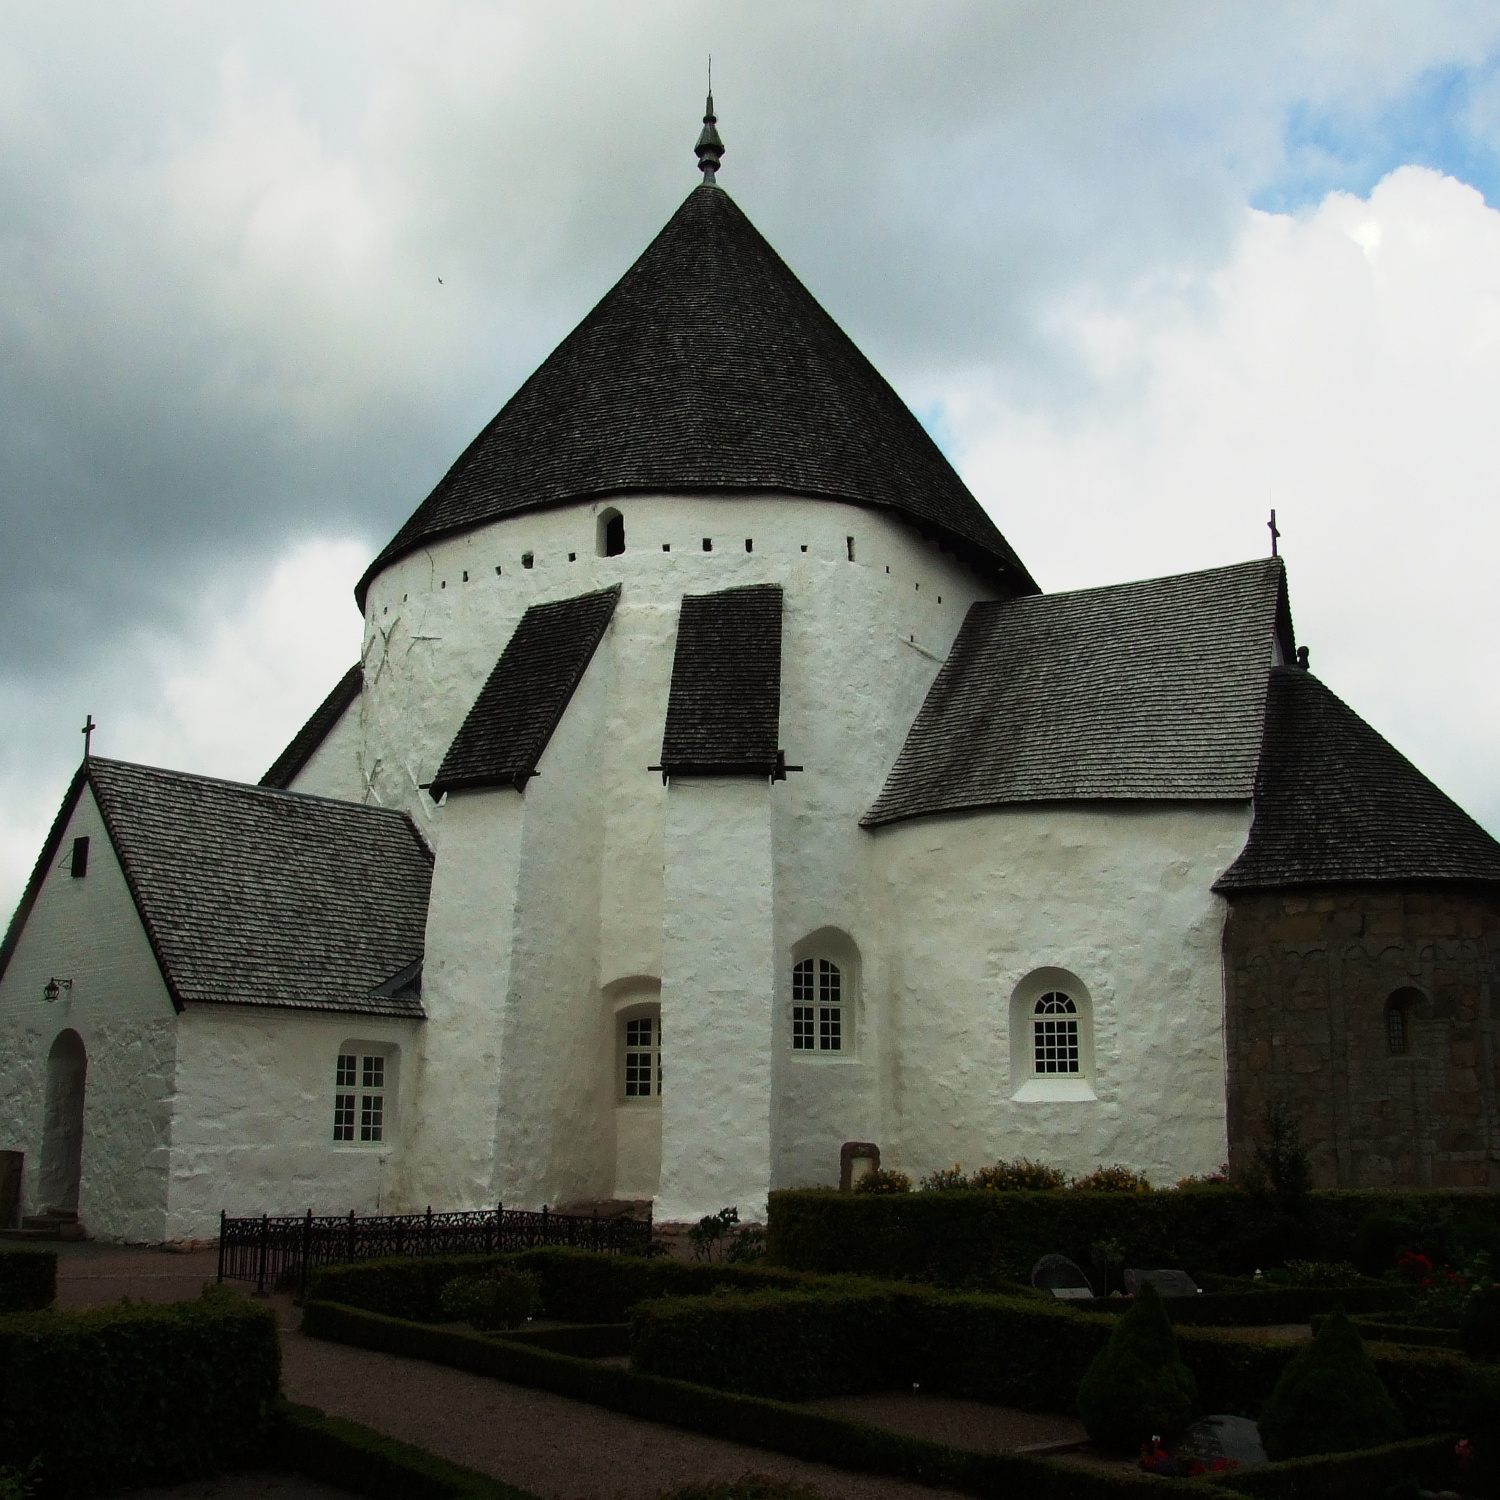 średniowieczny kościół rotundowy w Østerlars, najstarszy na wyspie